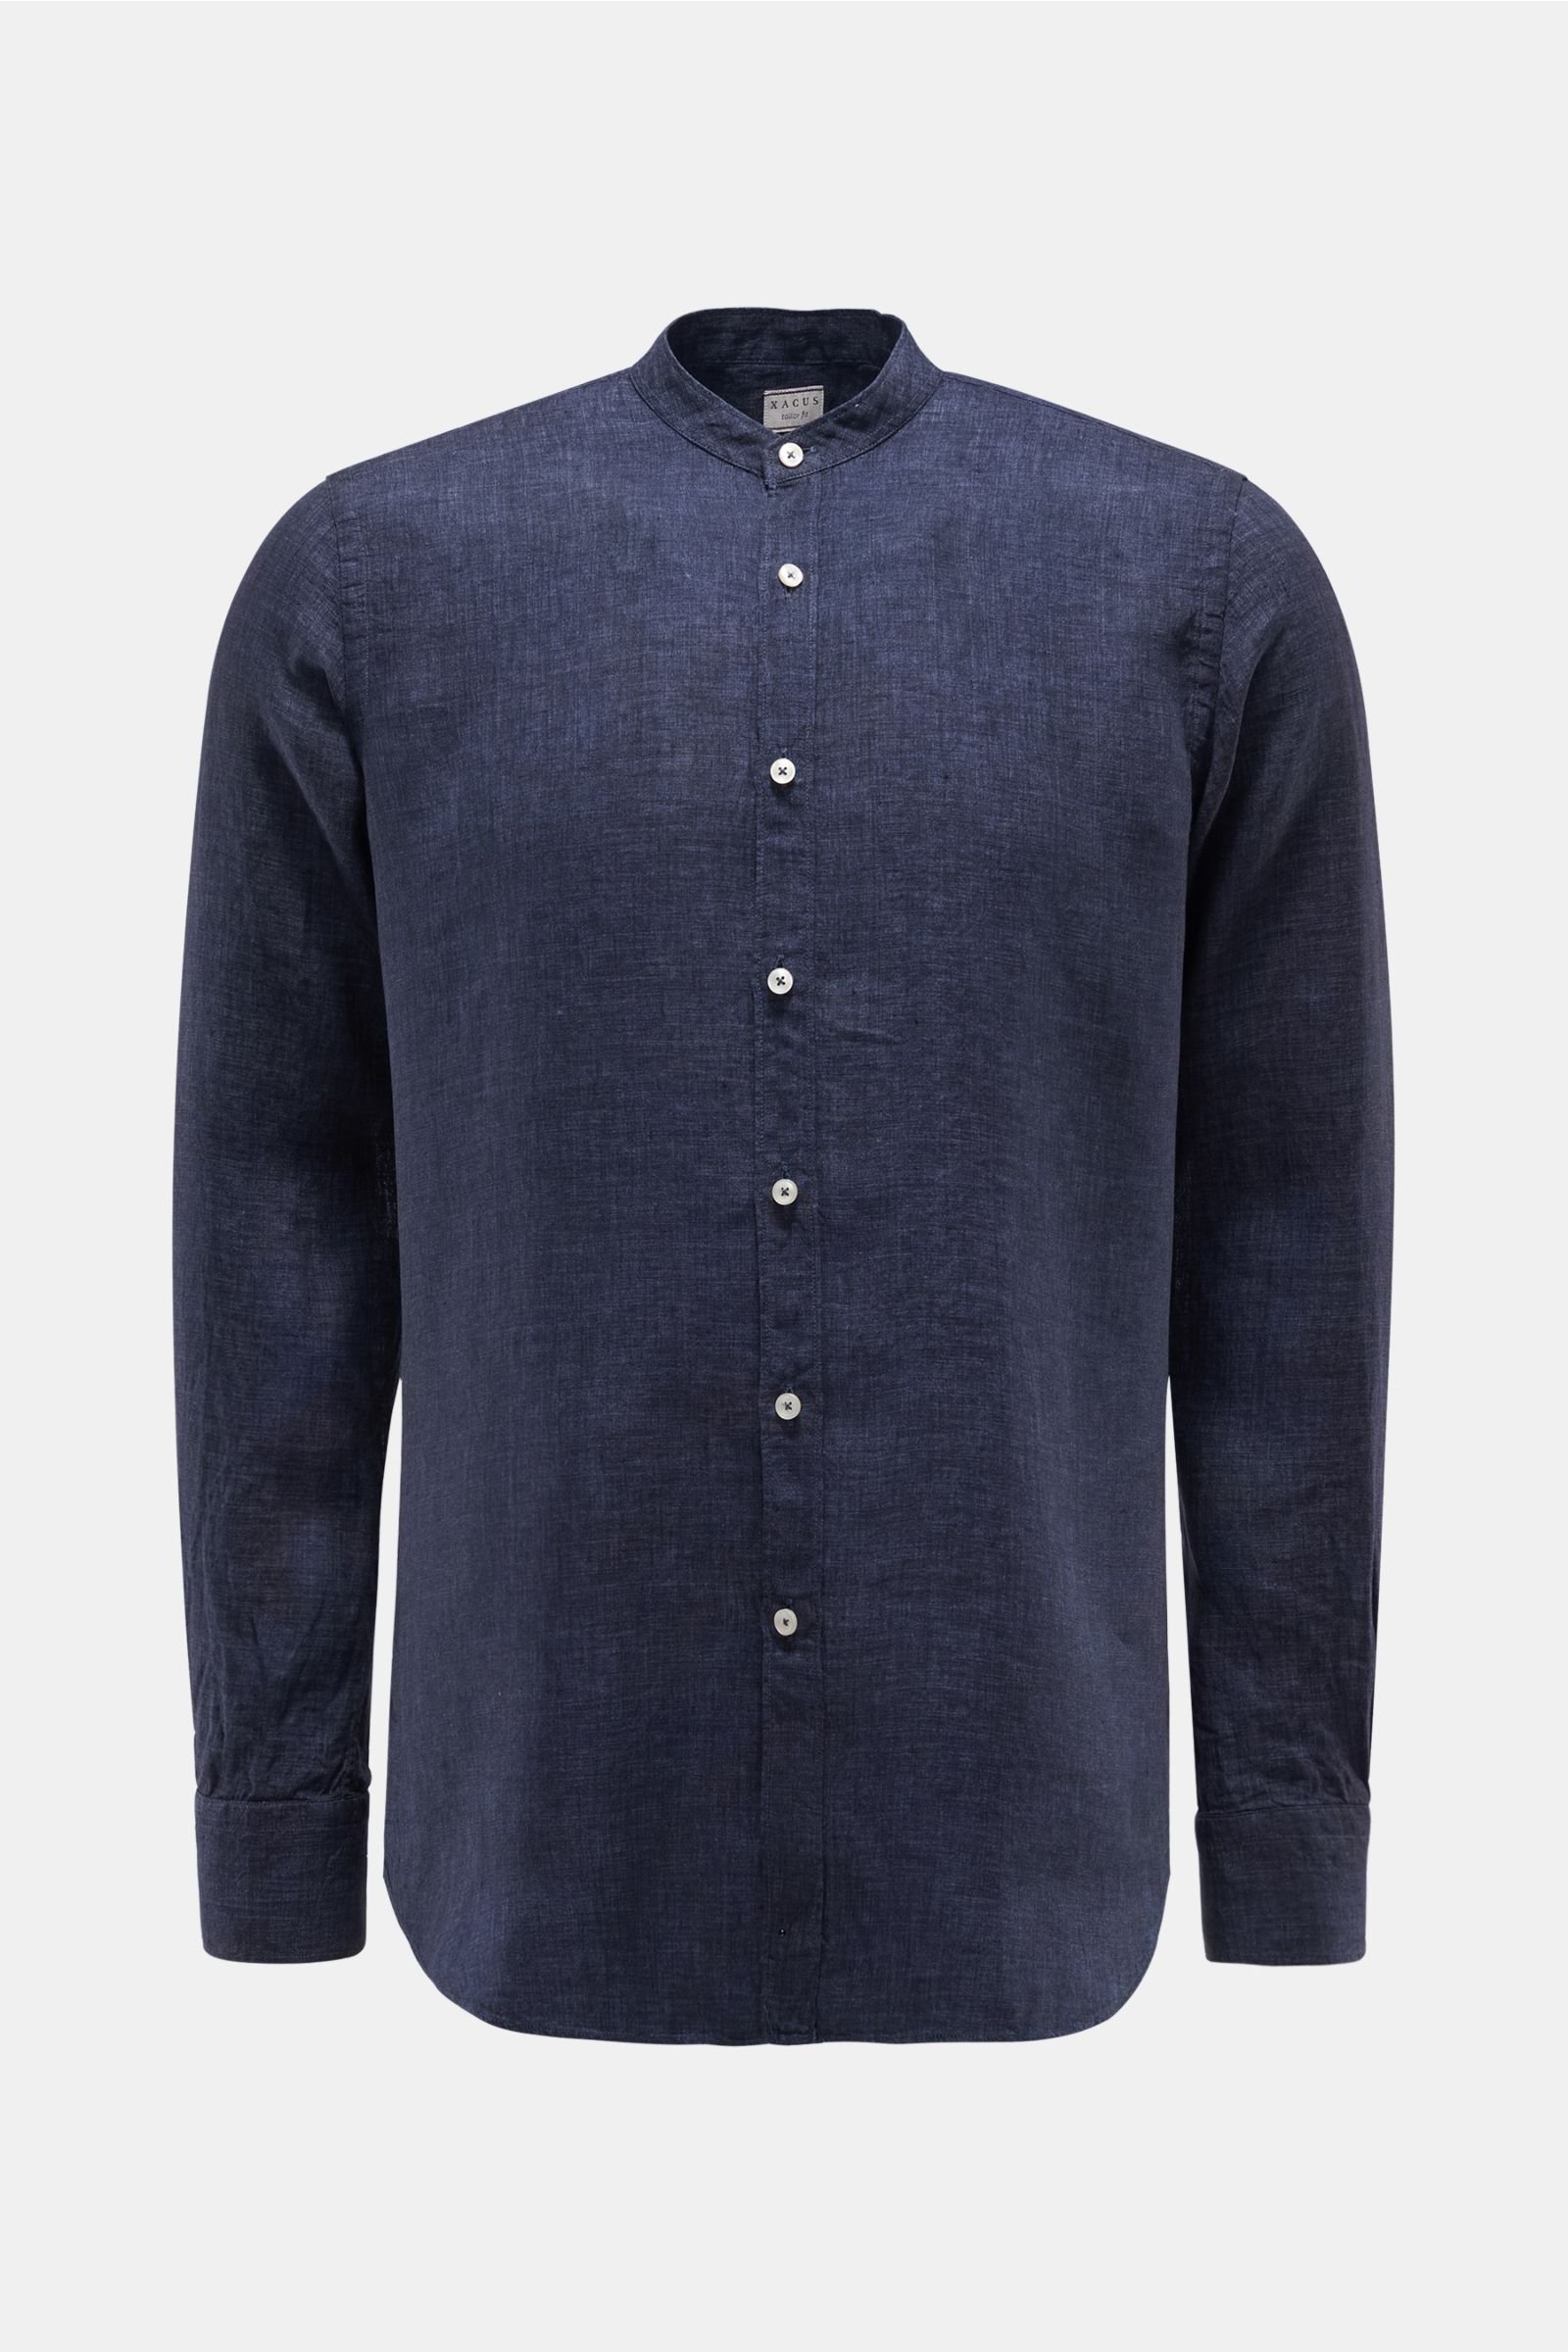 Linen shirt 'tailored fit' Grandad collar navy